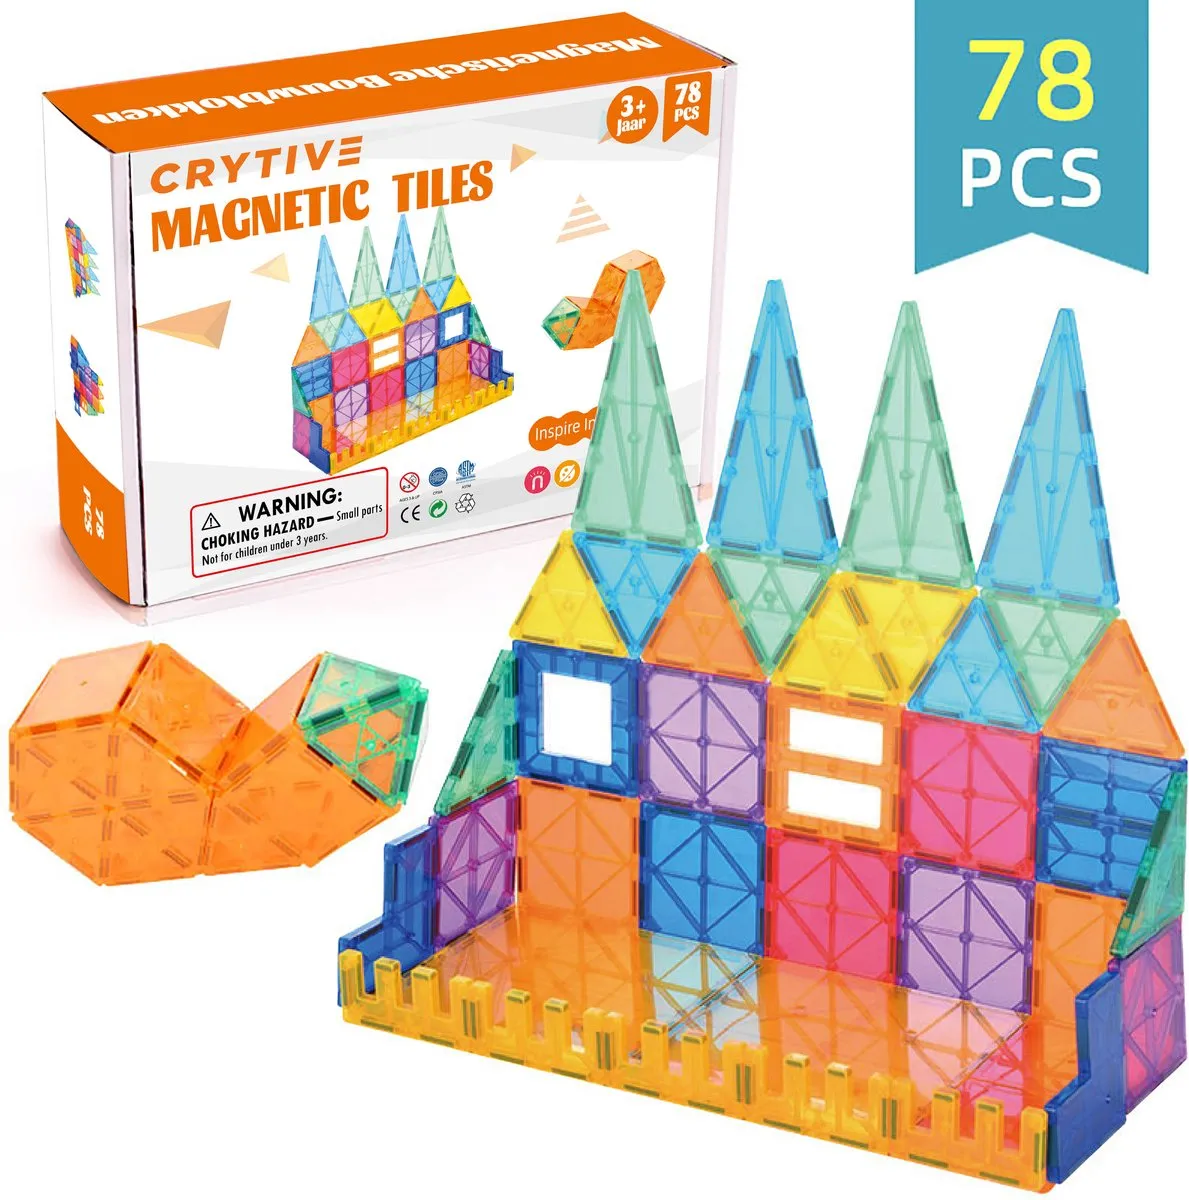 Magnetische Speelgoed - Voordeelset 78 Stuks - Magnetisch Speelgoed - Veilig Voor Kinderen - Magna Tiles - Magnetisch Speelgoed - Extra Groot Magnetisch Speelgoed speelgoed